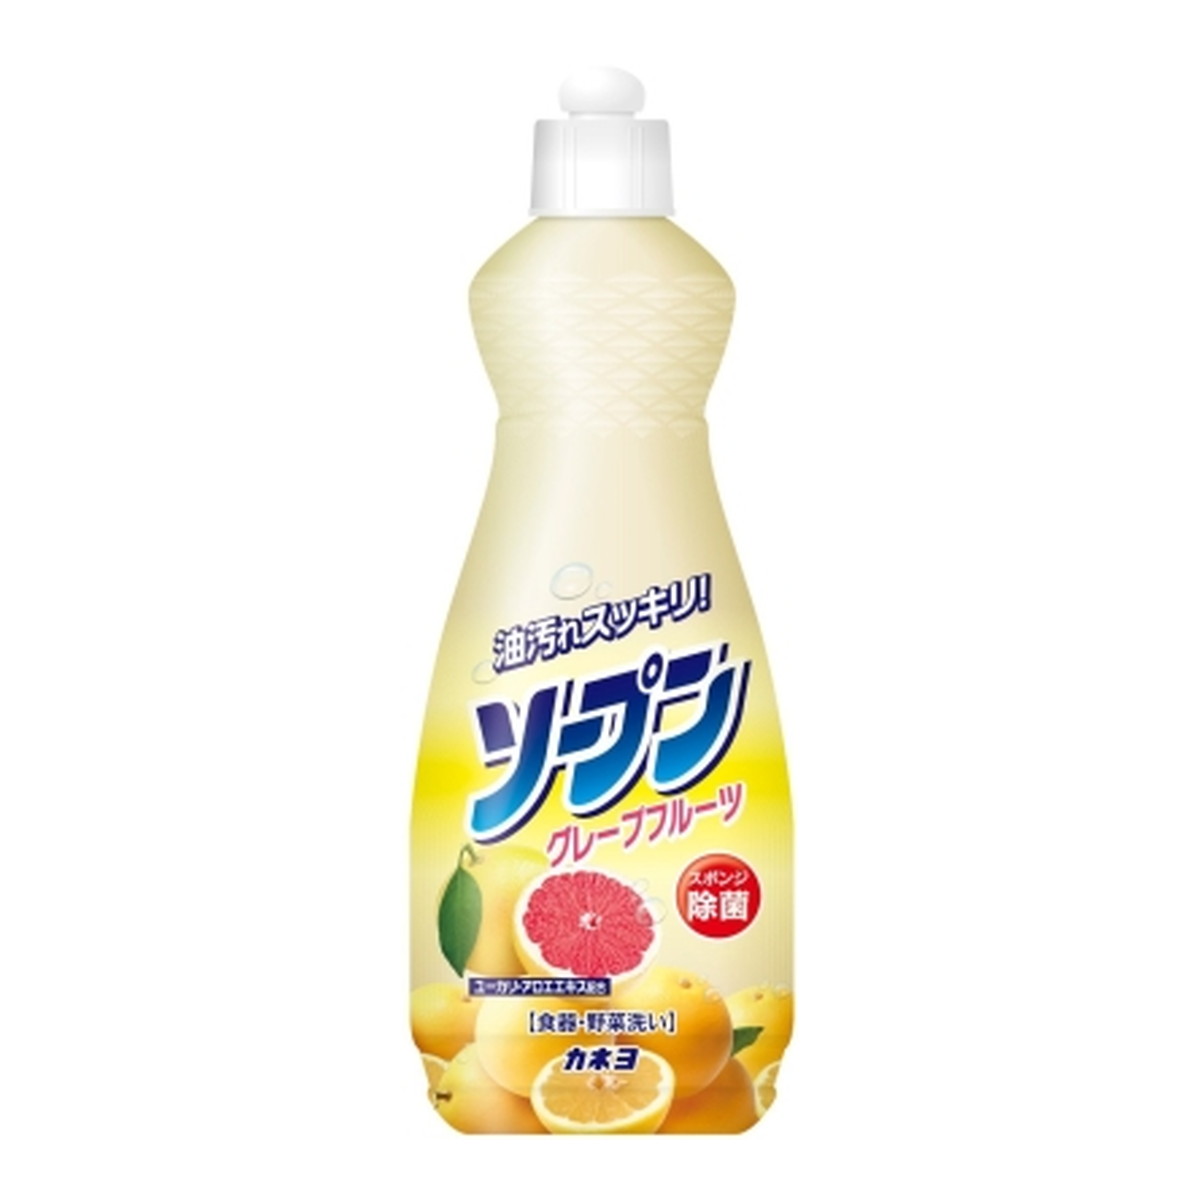 カネヨ石鹸 ソープン グレープフルーツ 本体 600ml